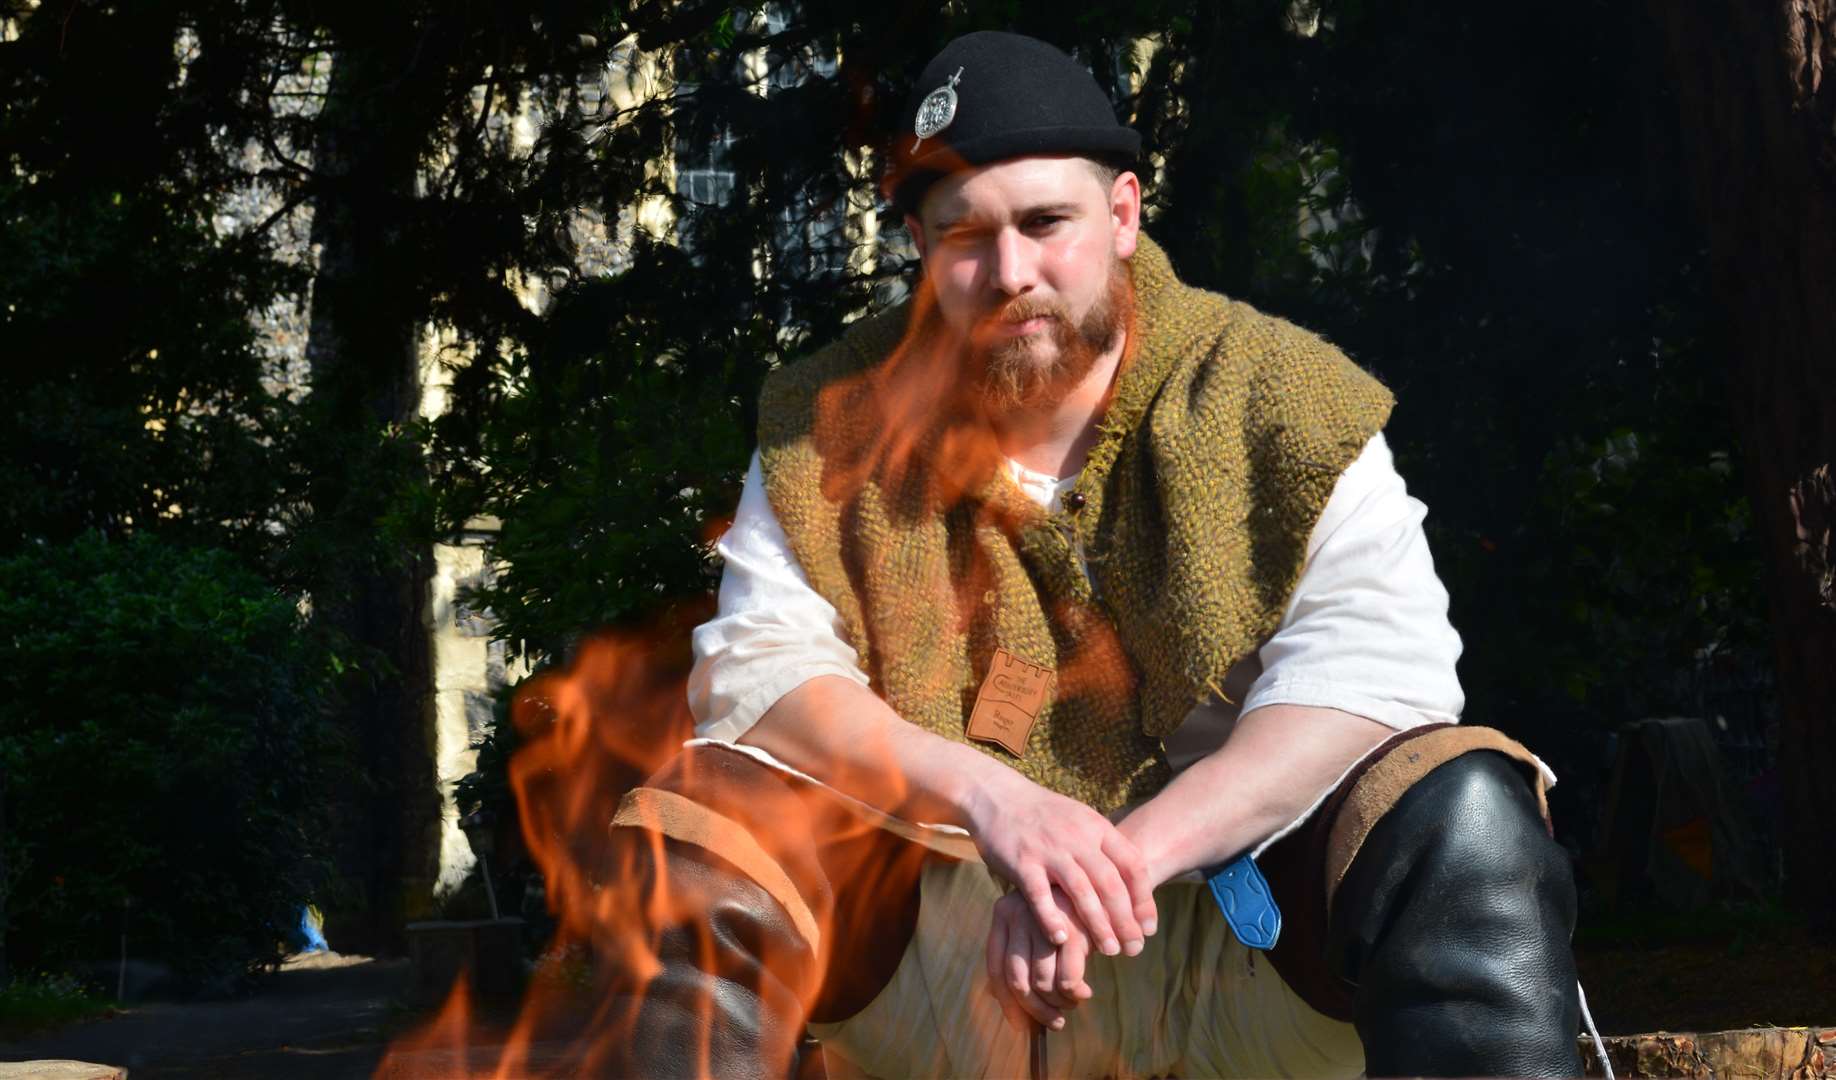 Campfire tales at Canterbury Tales this summer